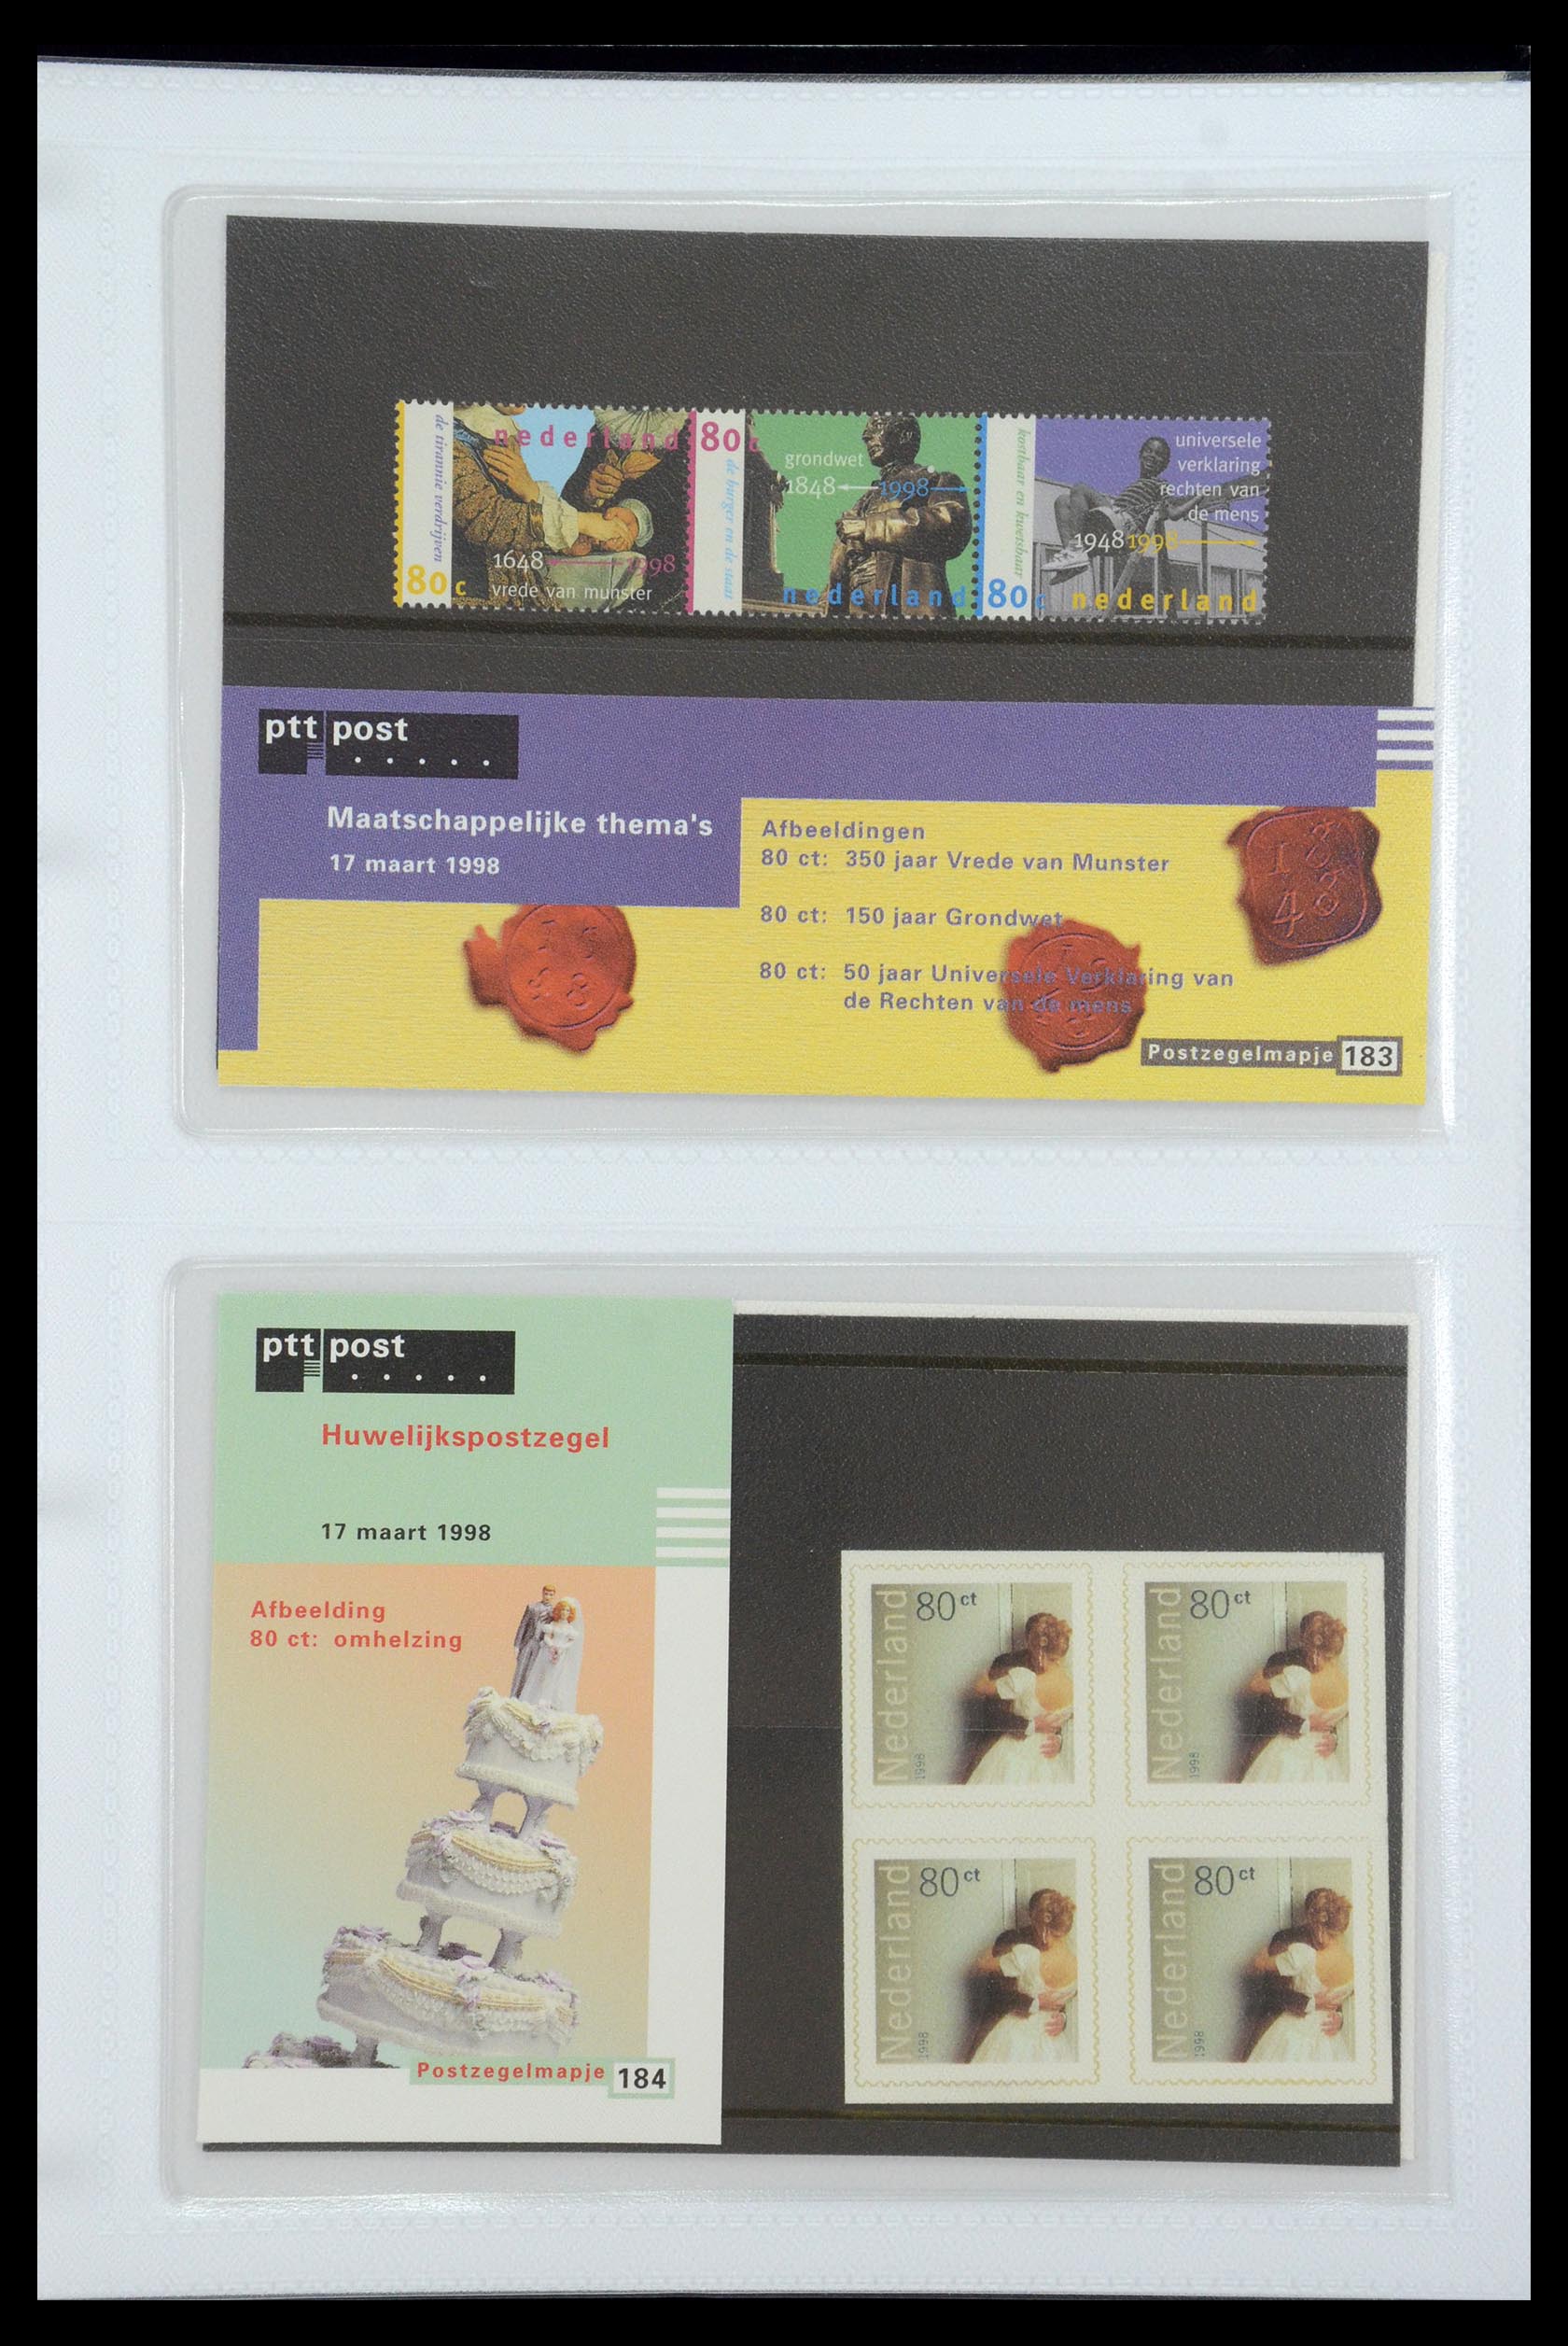 35947 095 - Stamp Collection 35947 Netherlands PTT presentation packs 1982-2019!